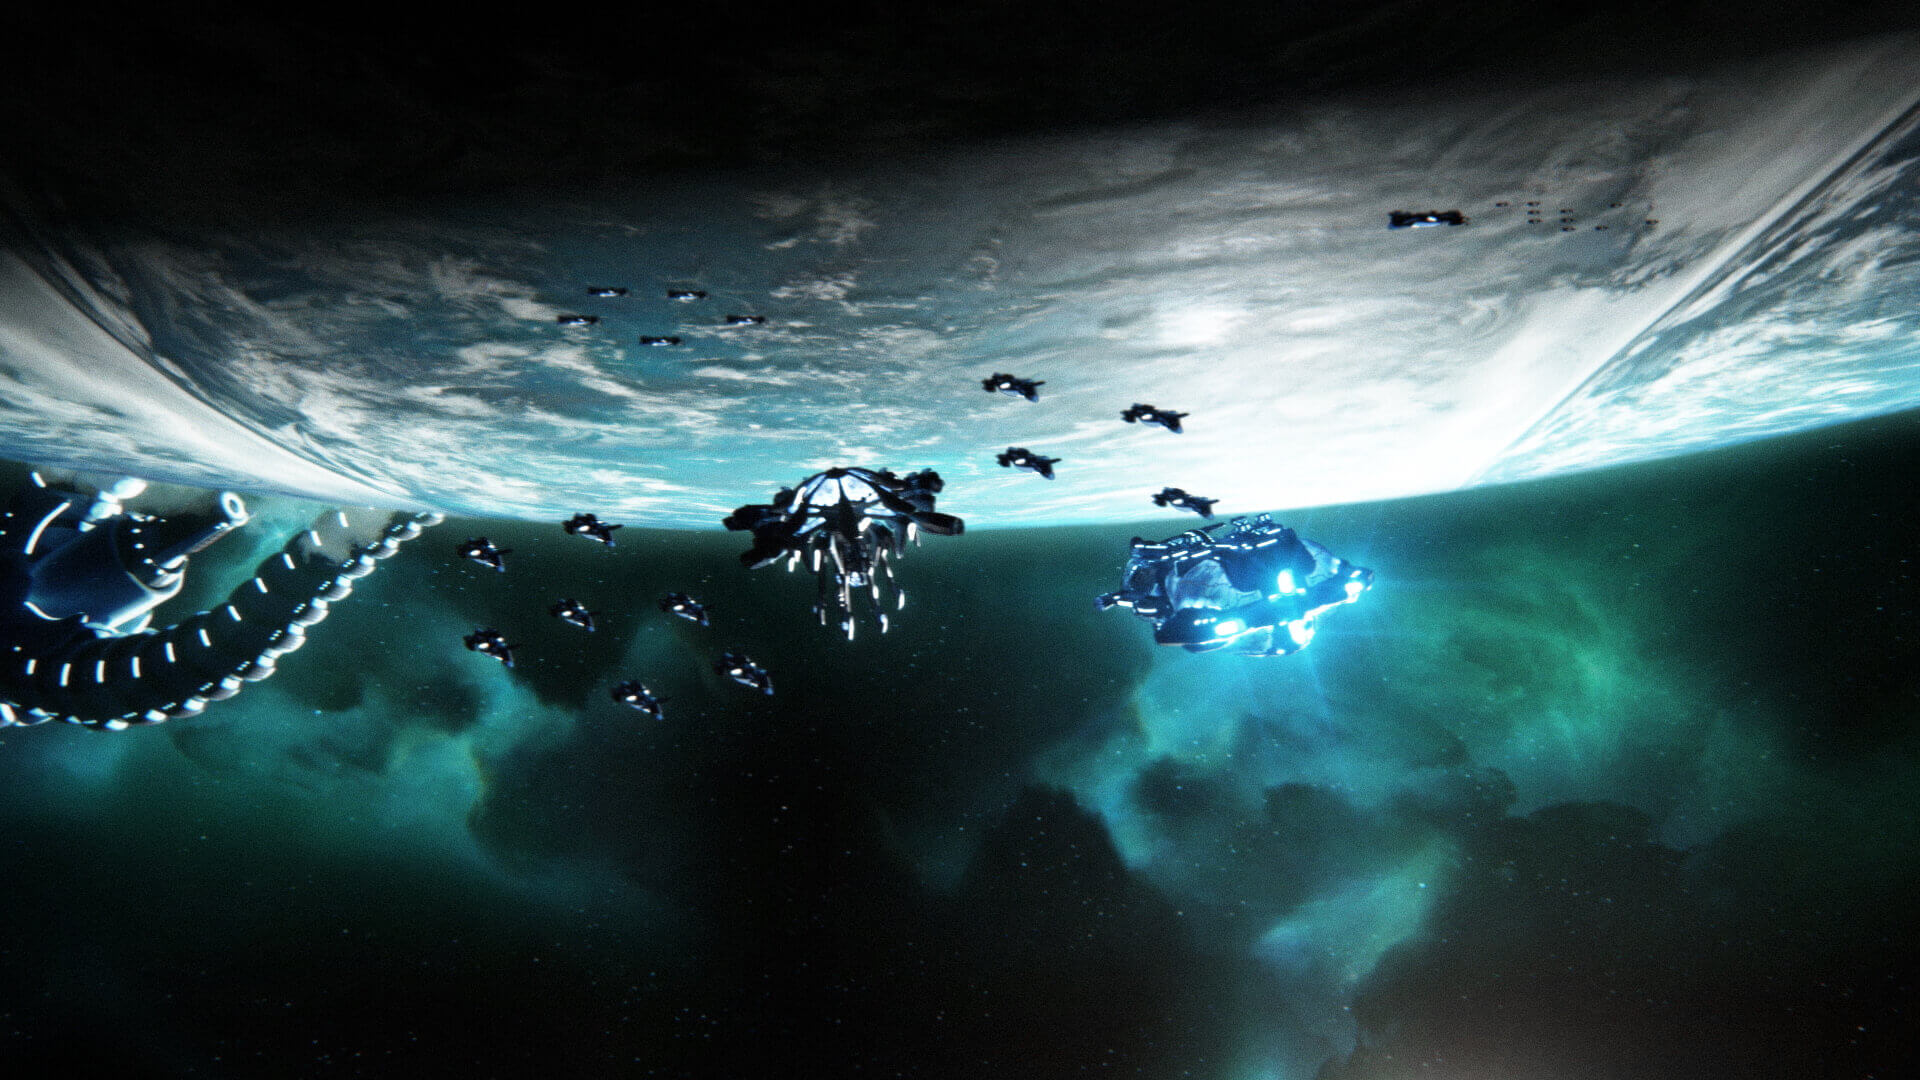 Stellaris Space design, made by Magoo Gaming Design.